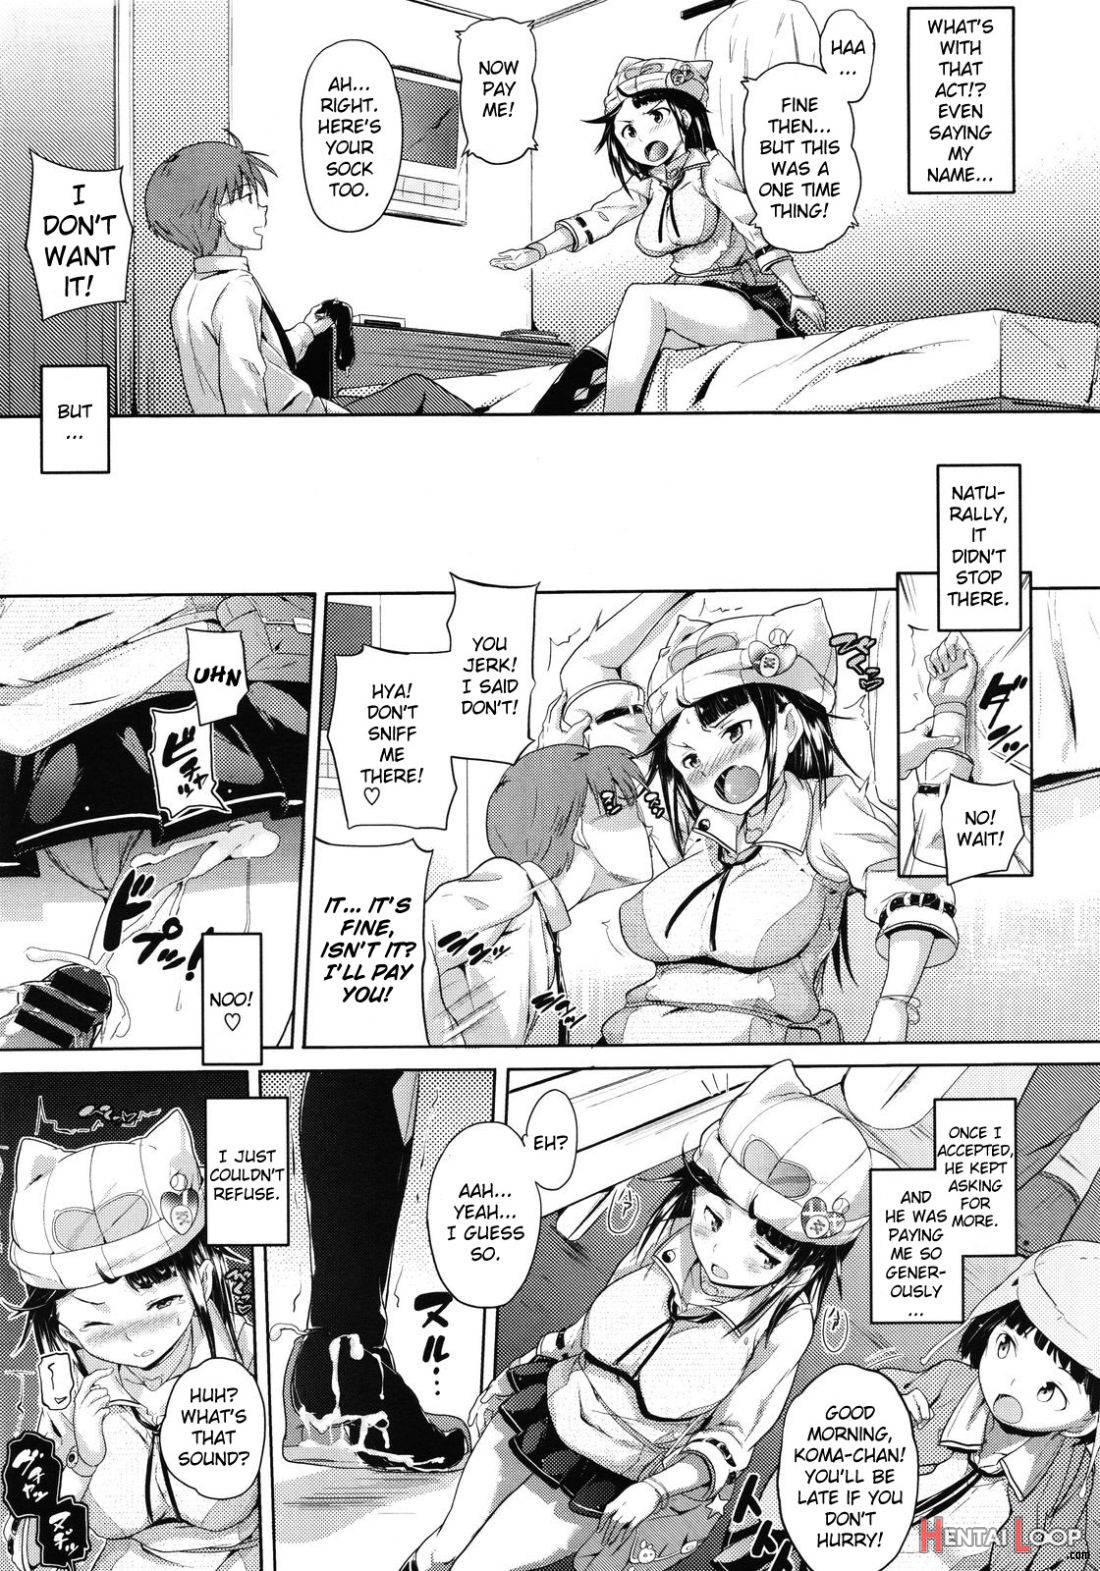 Kono Manga wa Onii-chan no Teikyou de Ookuri Shimasu page 9